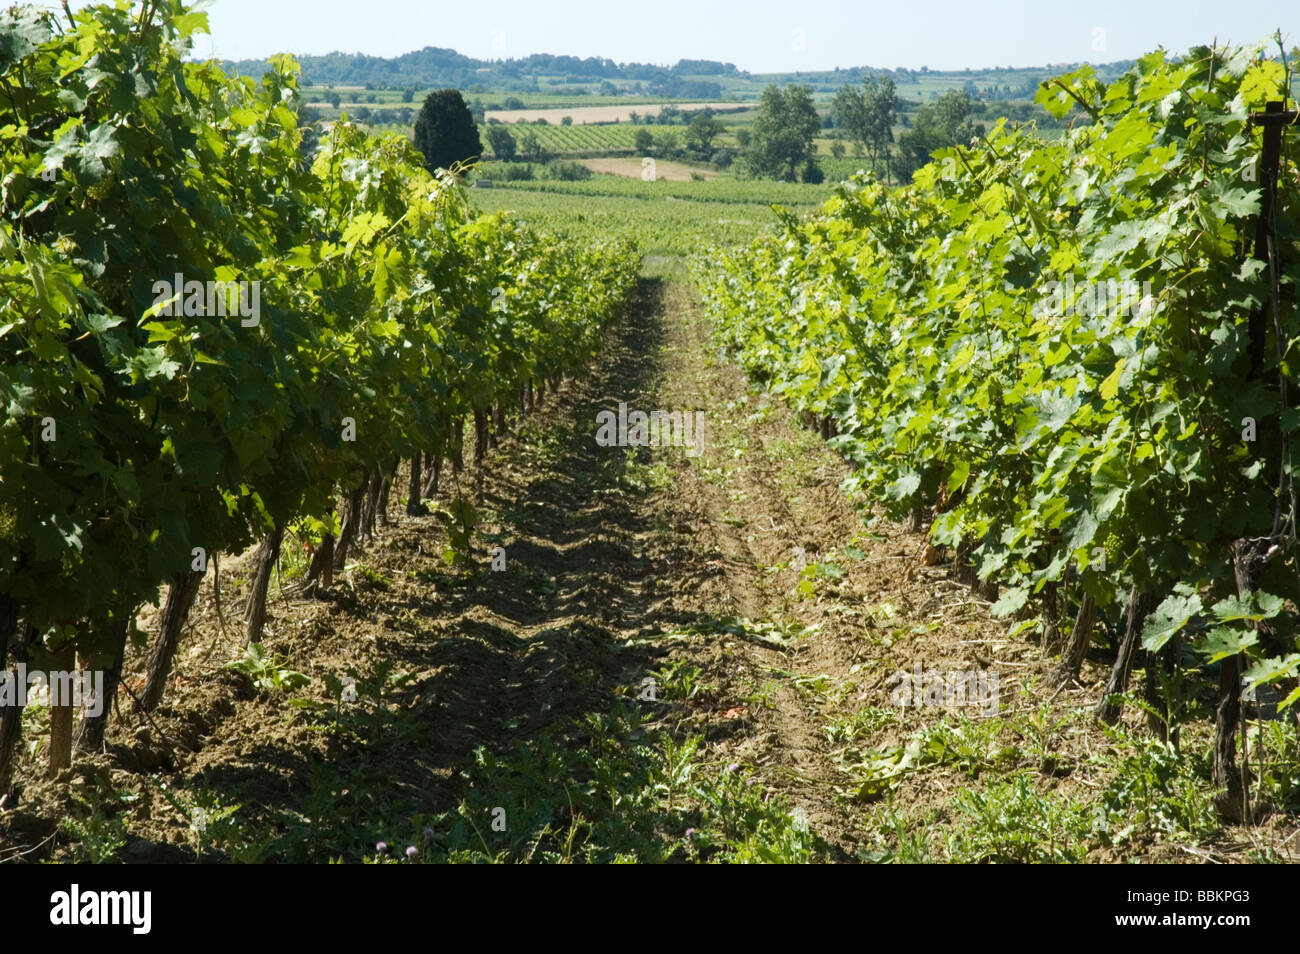 La vigne dans le sud de la France Banque D'Images